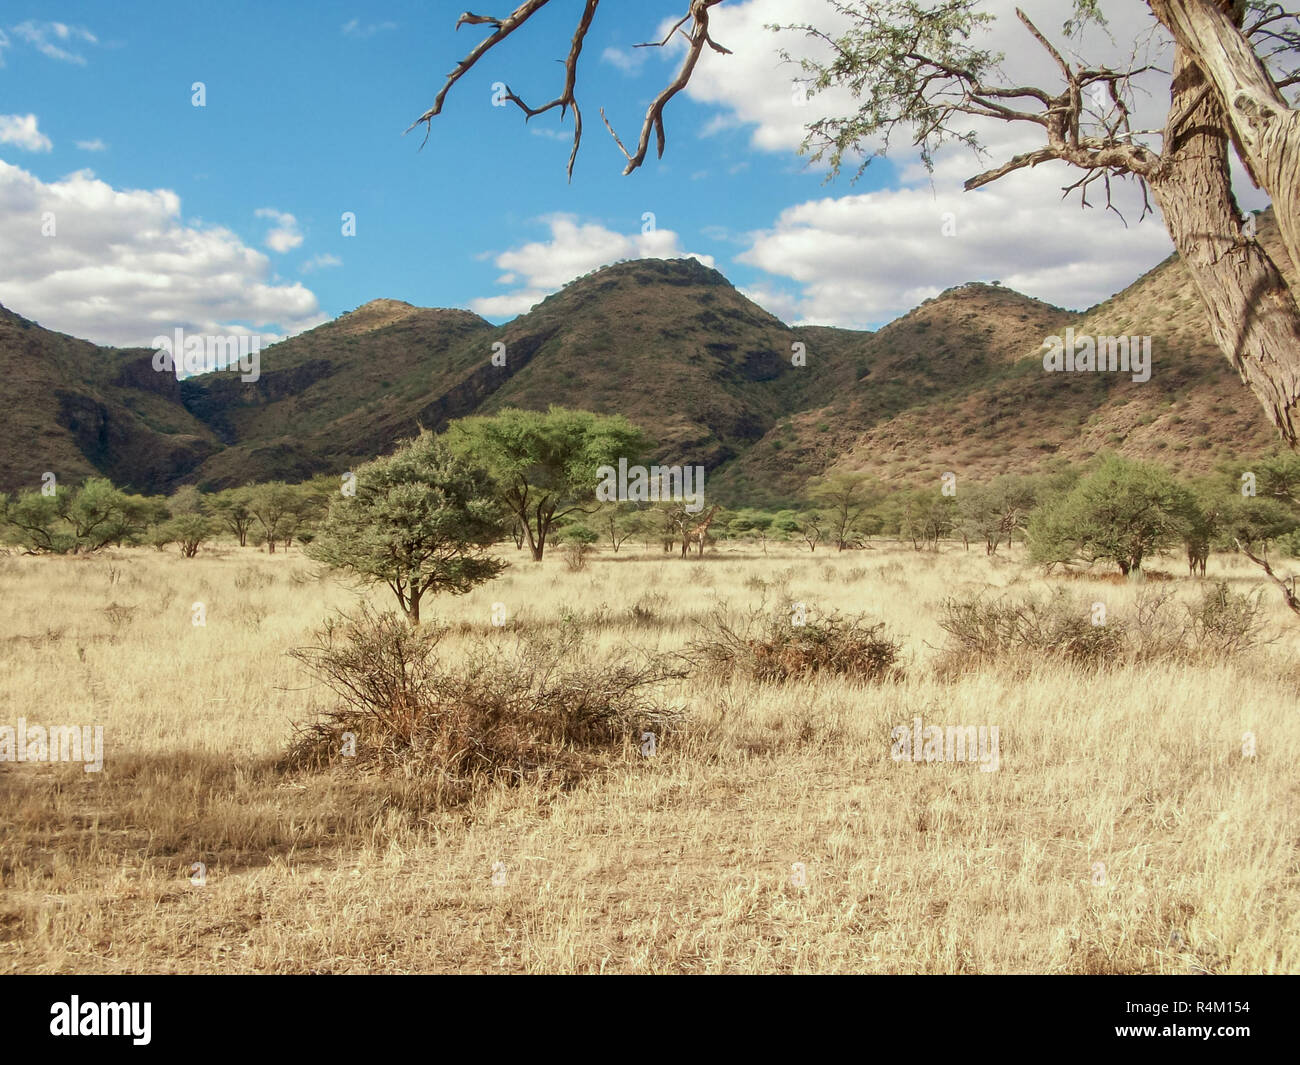 Einen wunderschönen Blick auf die Savanne in Afrika mit zwei Giraffen ziemlich weit entfernt Stockfoto